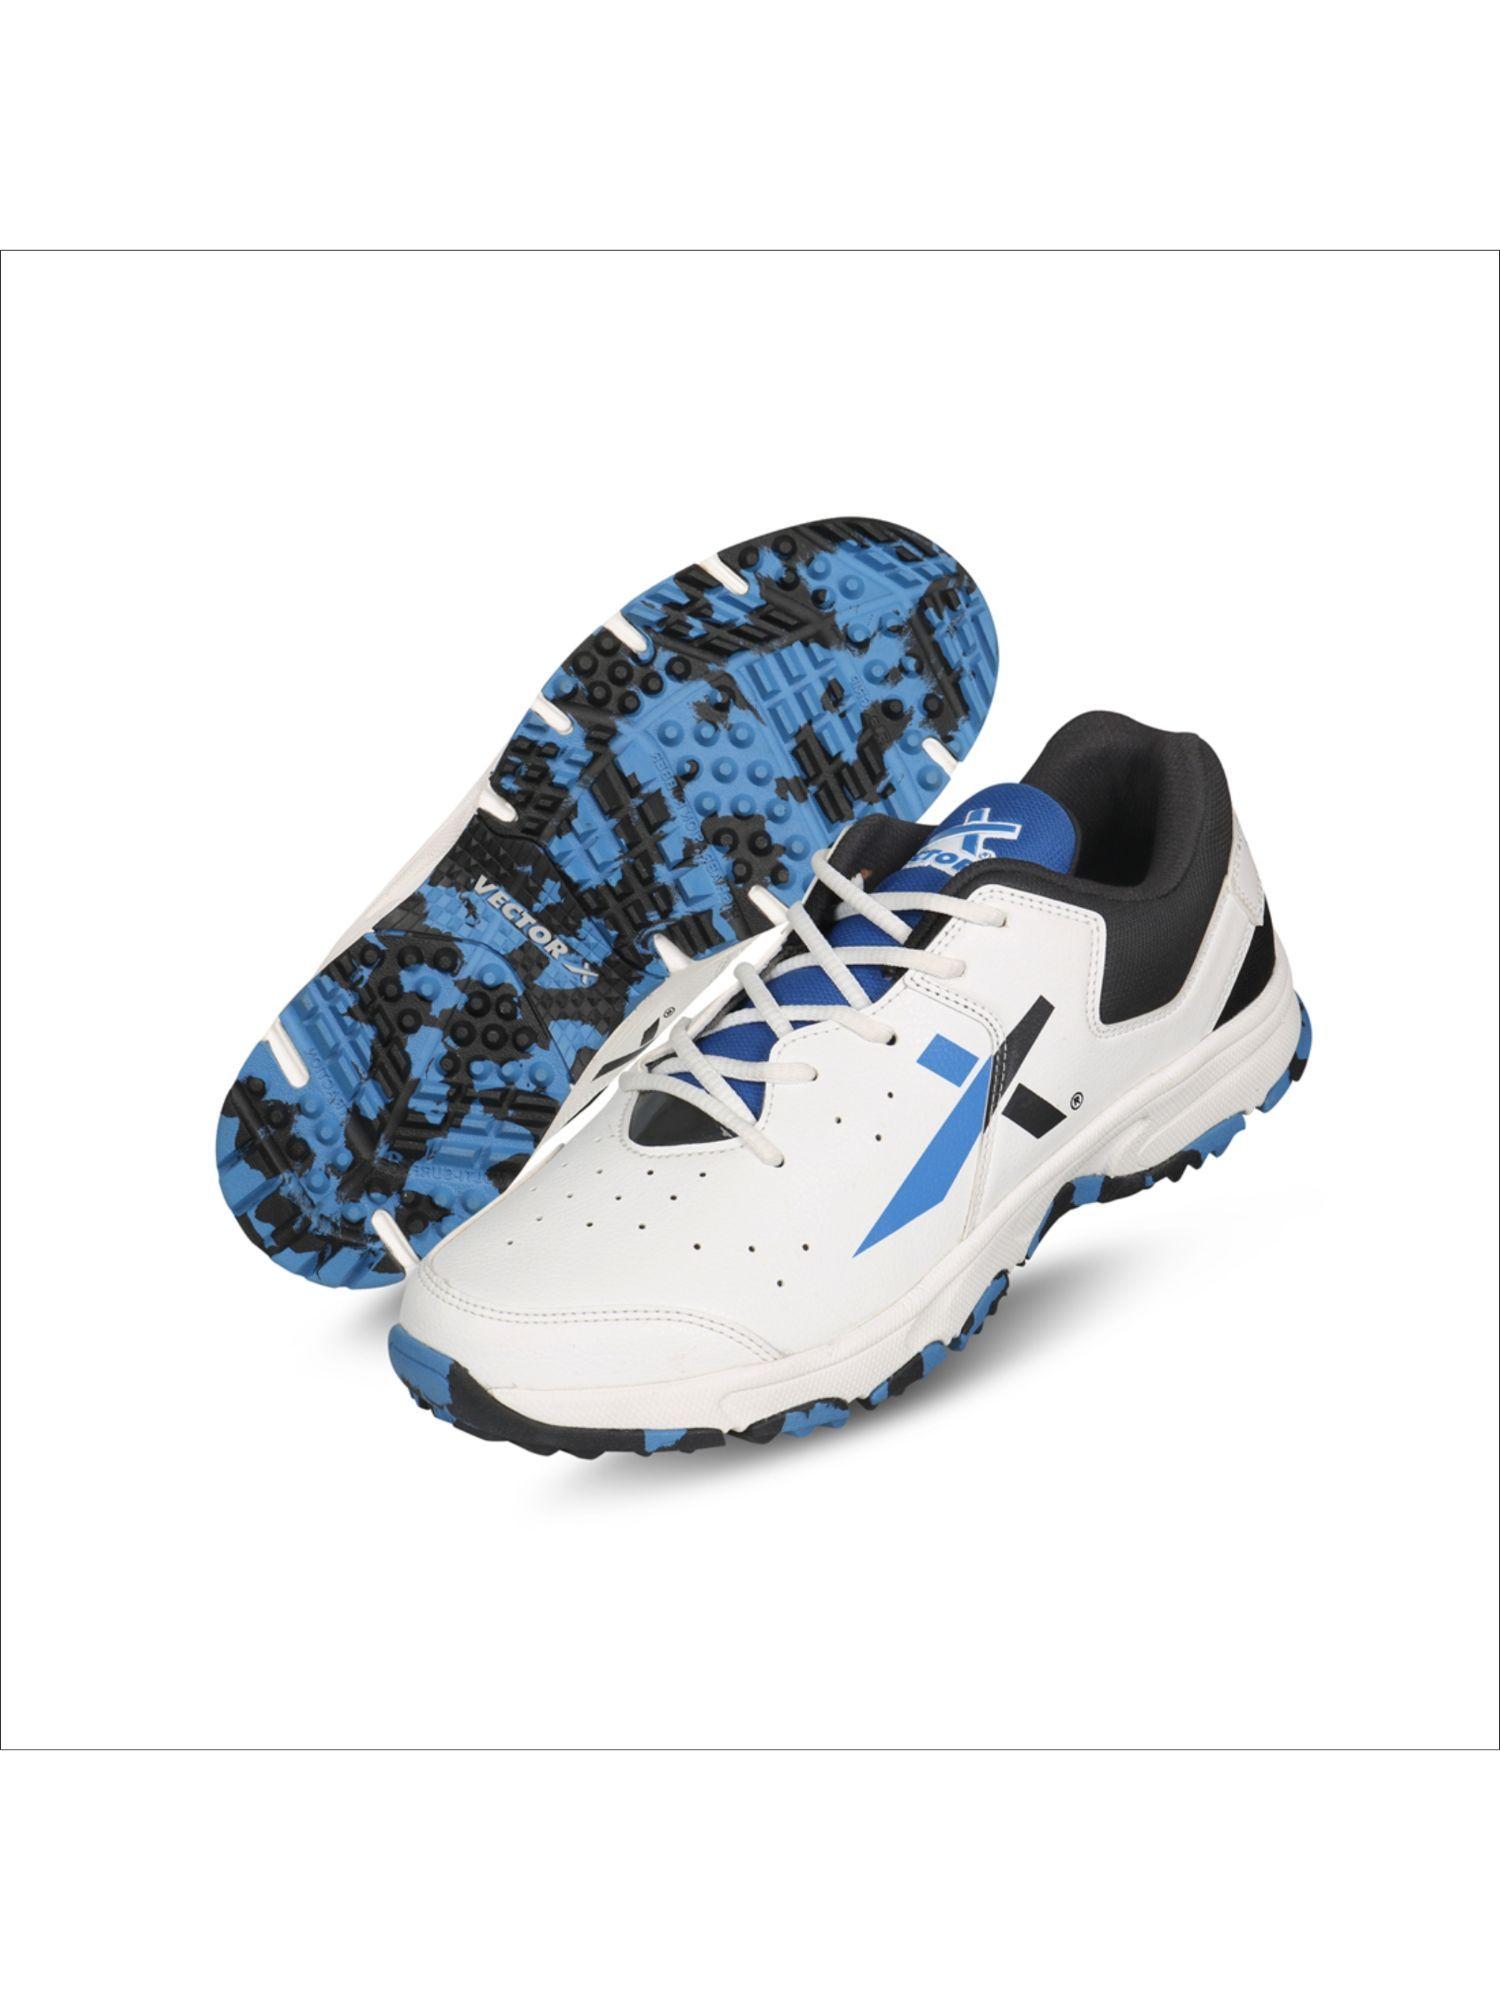 ckt-500-cricket-shoes-for-men-(white-black-blue)